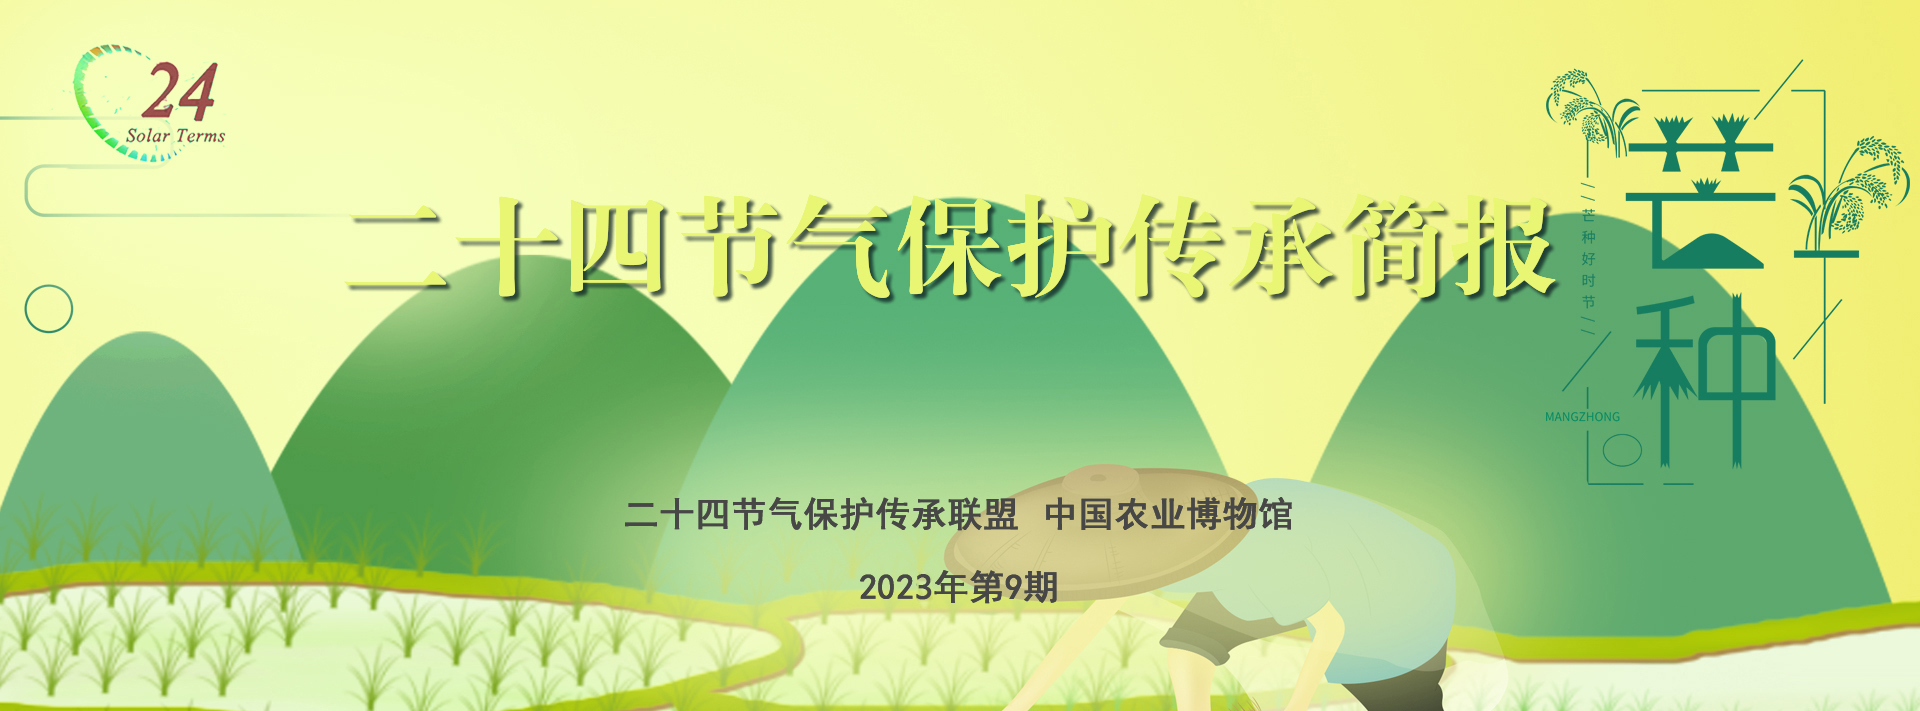 二十四节气保护传承简报 2023年第9期